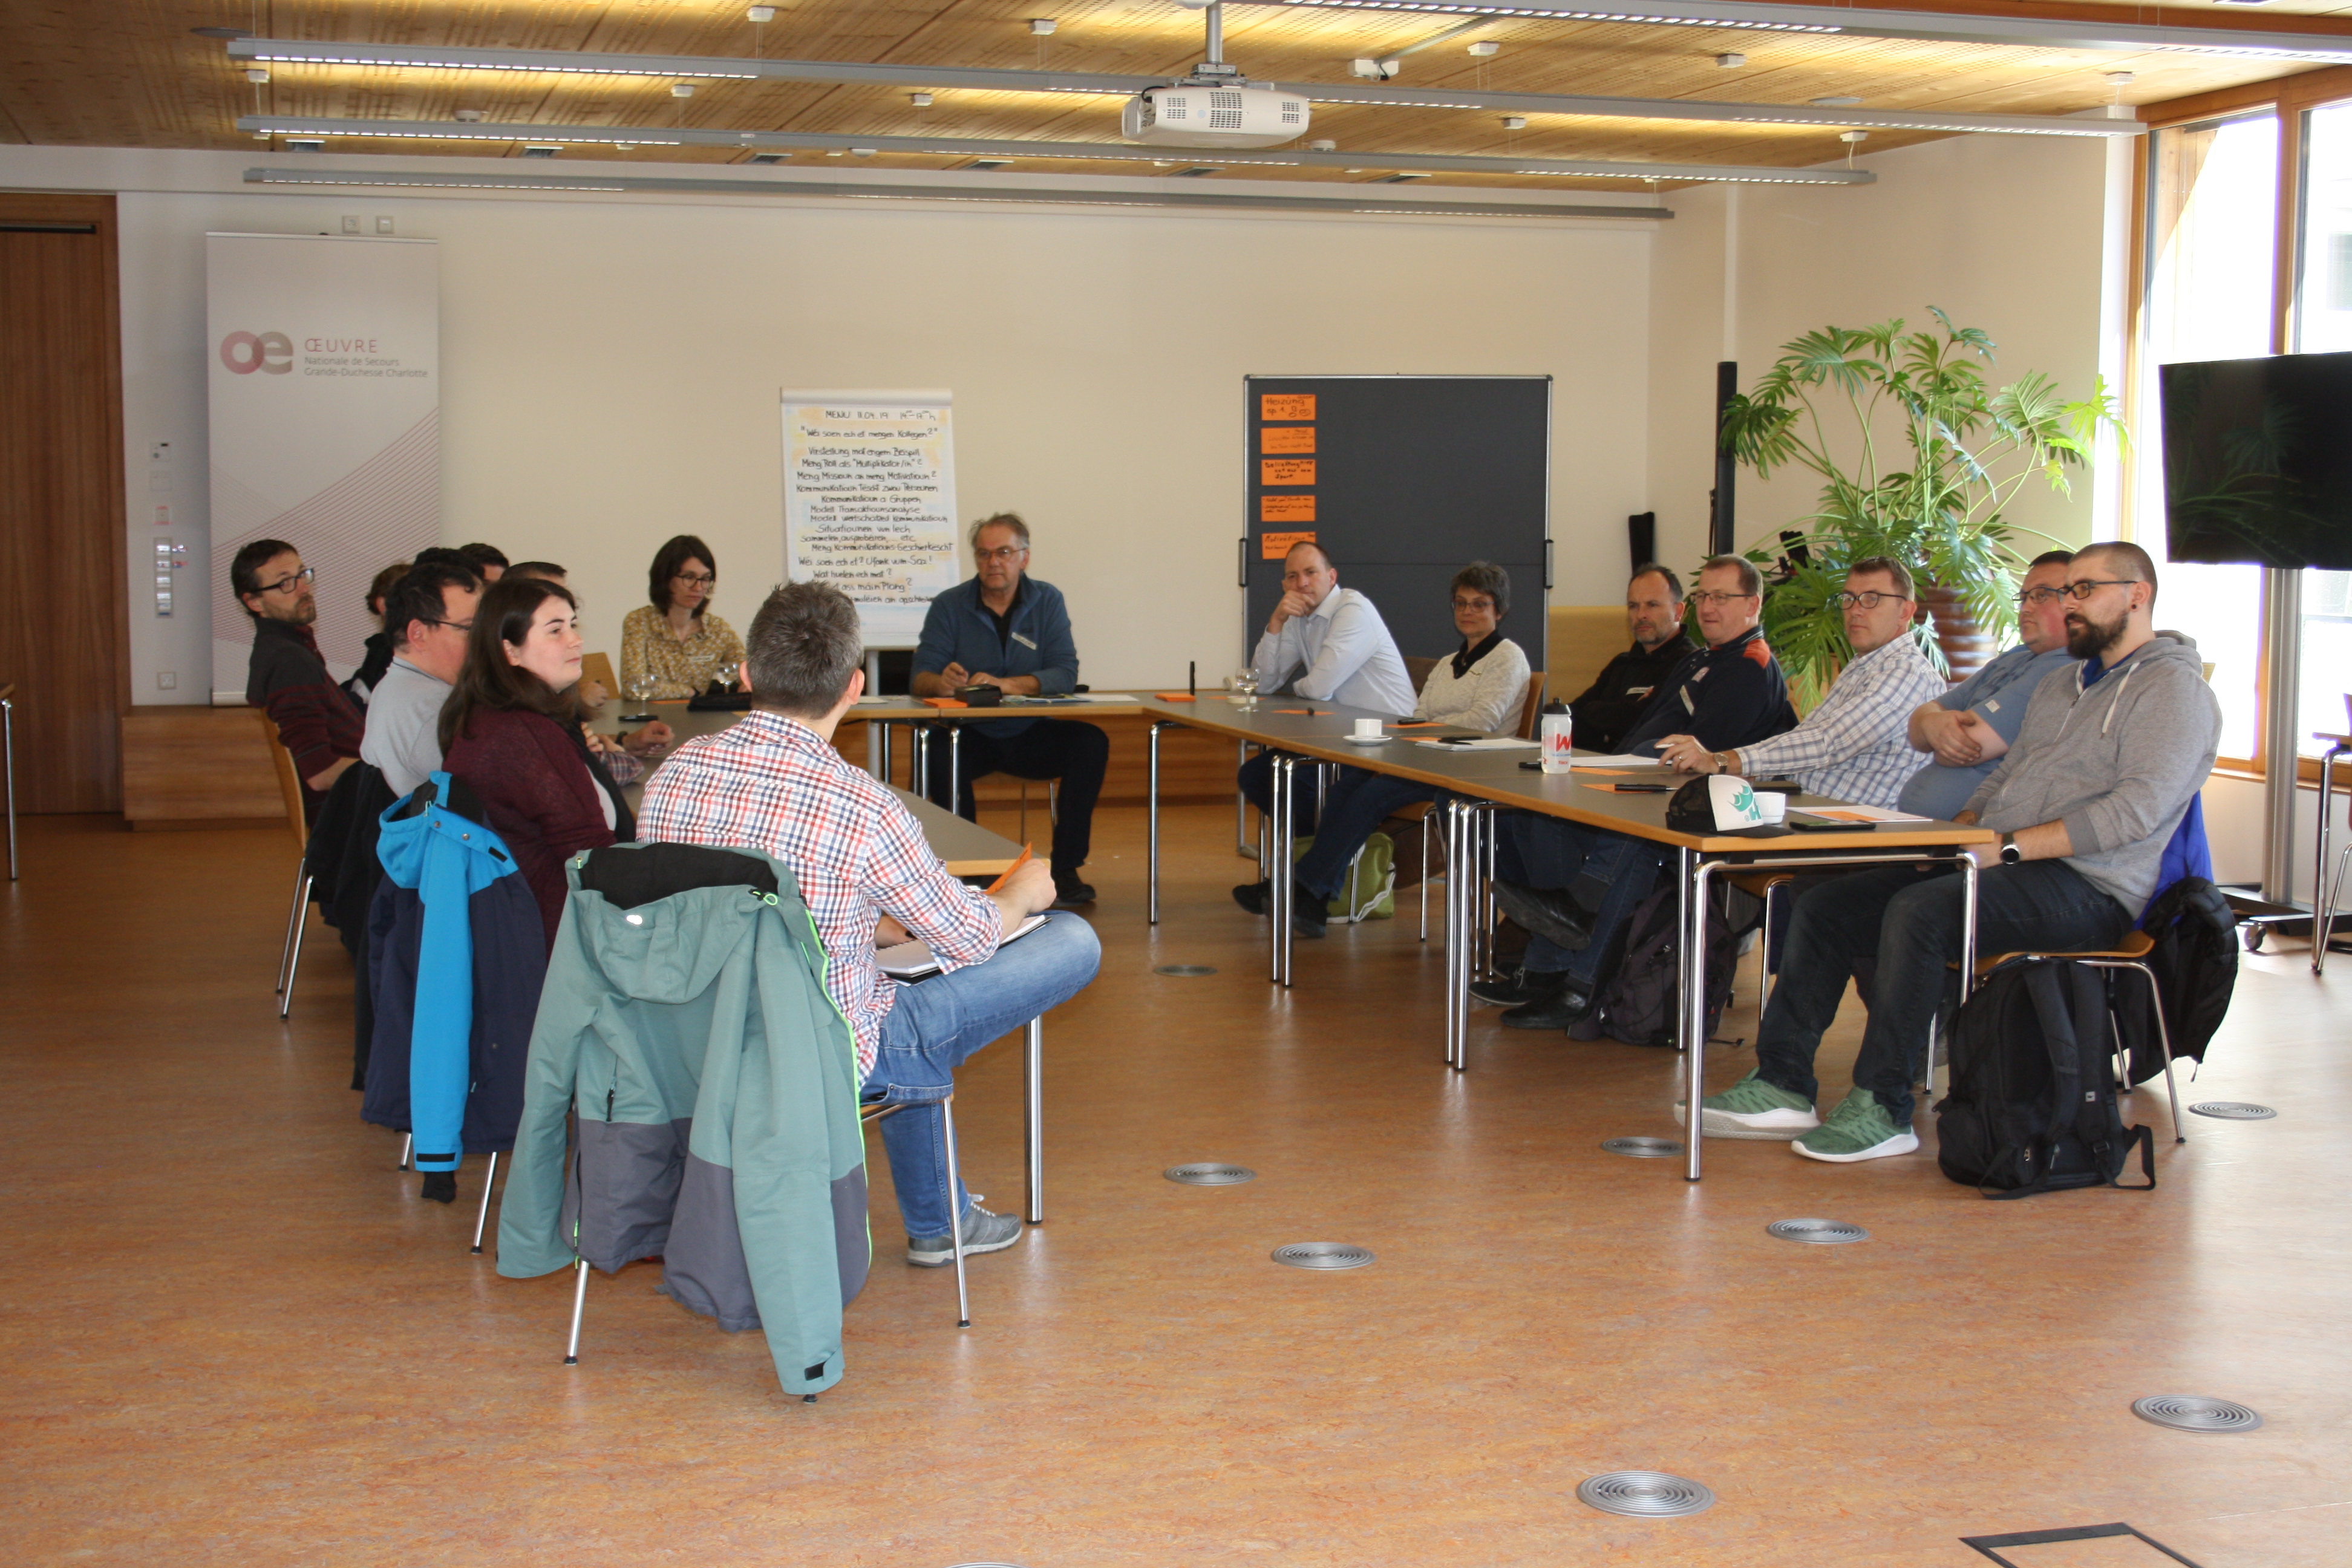 Énergie [light]: Workshop sur le thème de la communication face aux collègues dans le cadre de  l‘utilisation rationnelle de l’énergie